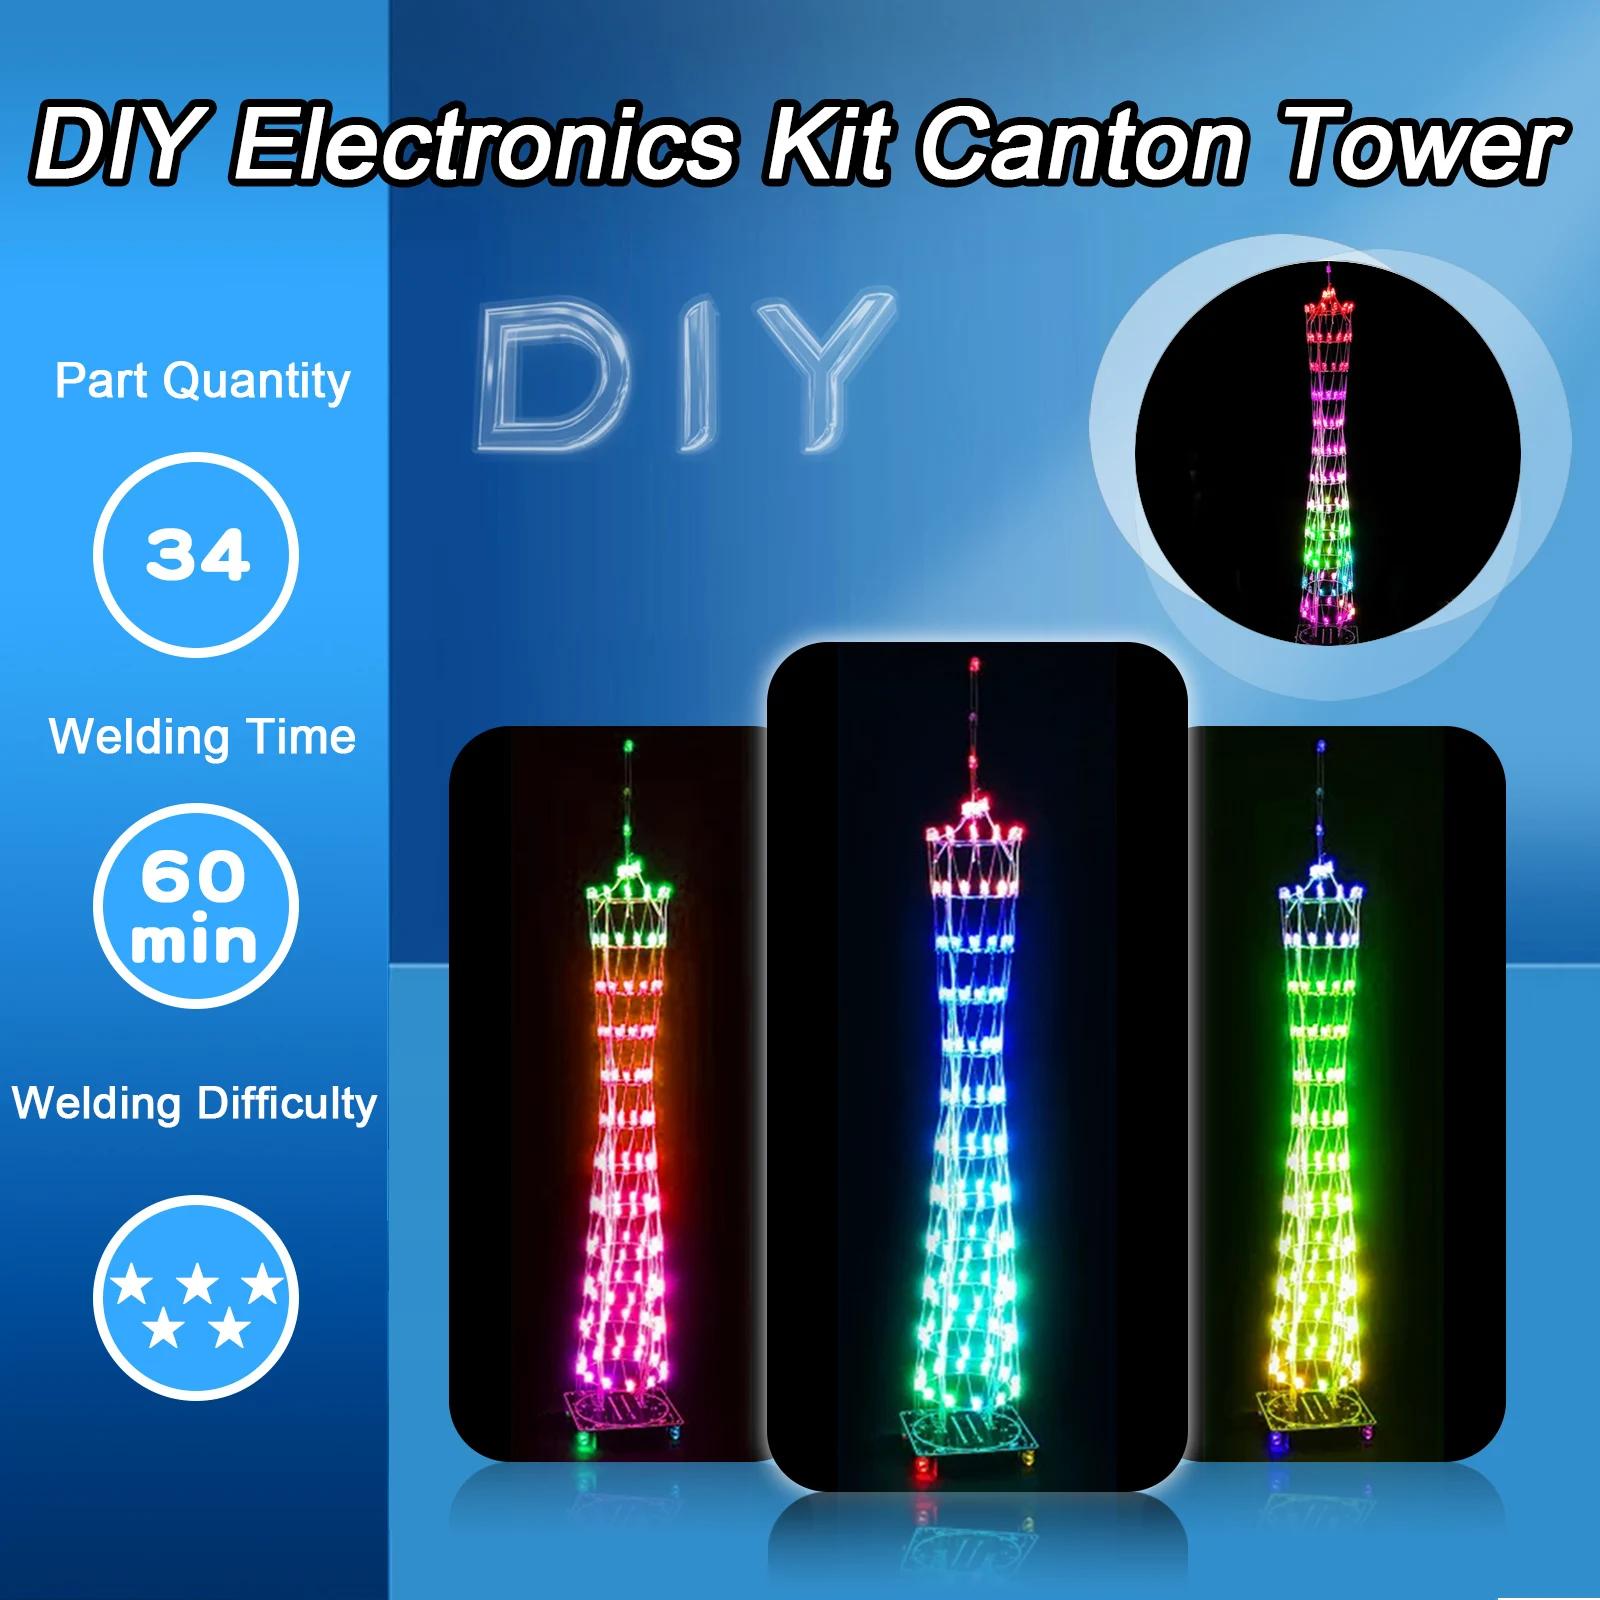 DIY Электронный Набор Для Пайки LED Colorful Canton Tower Lightcube 16*16 Практическое Обучение Электронике Пайка